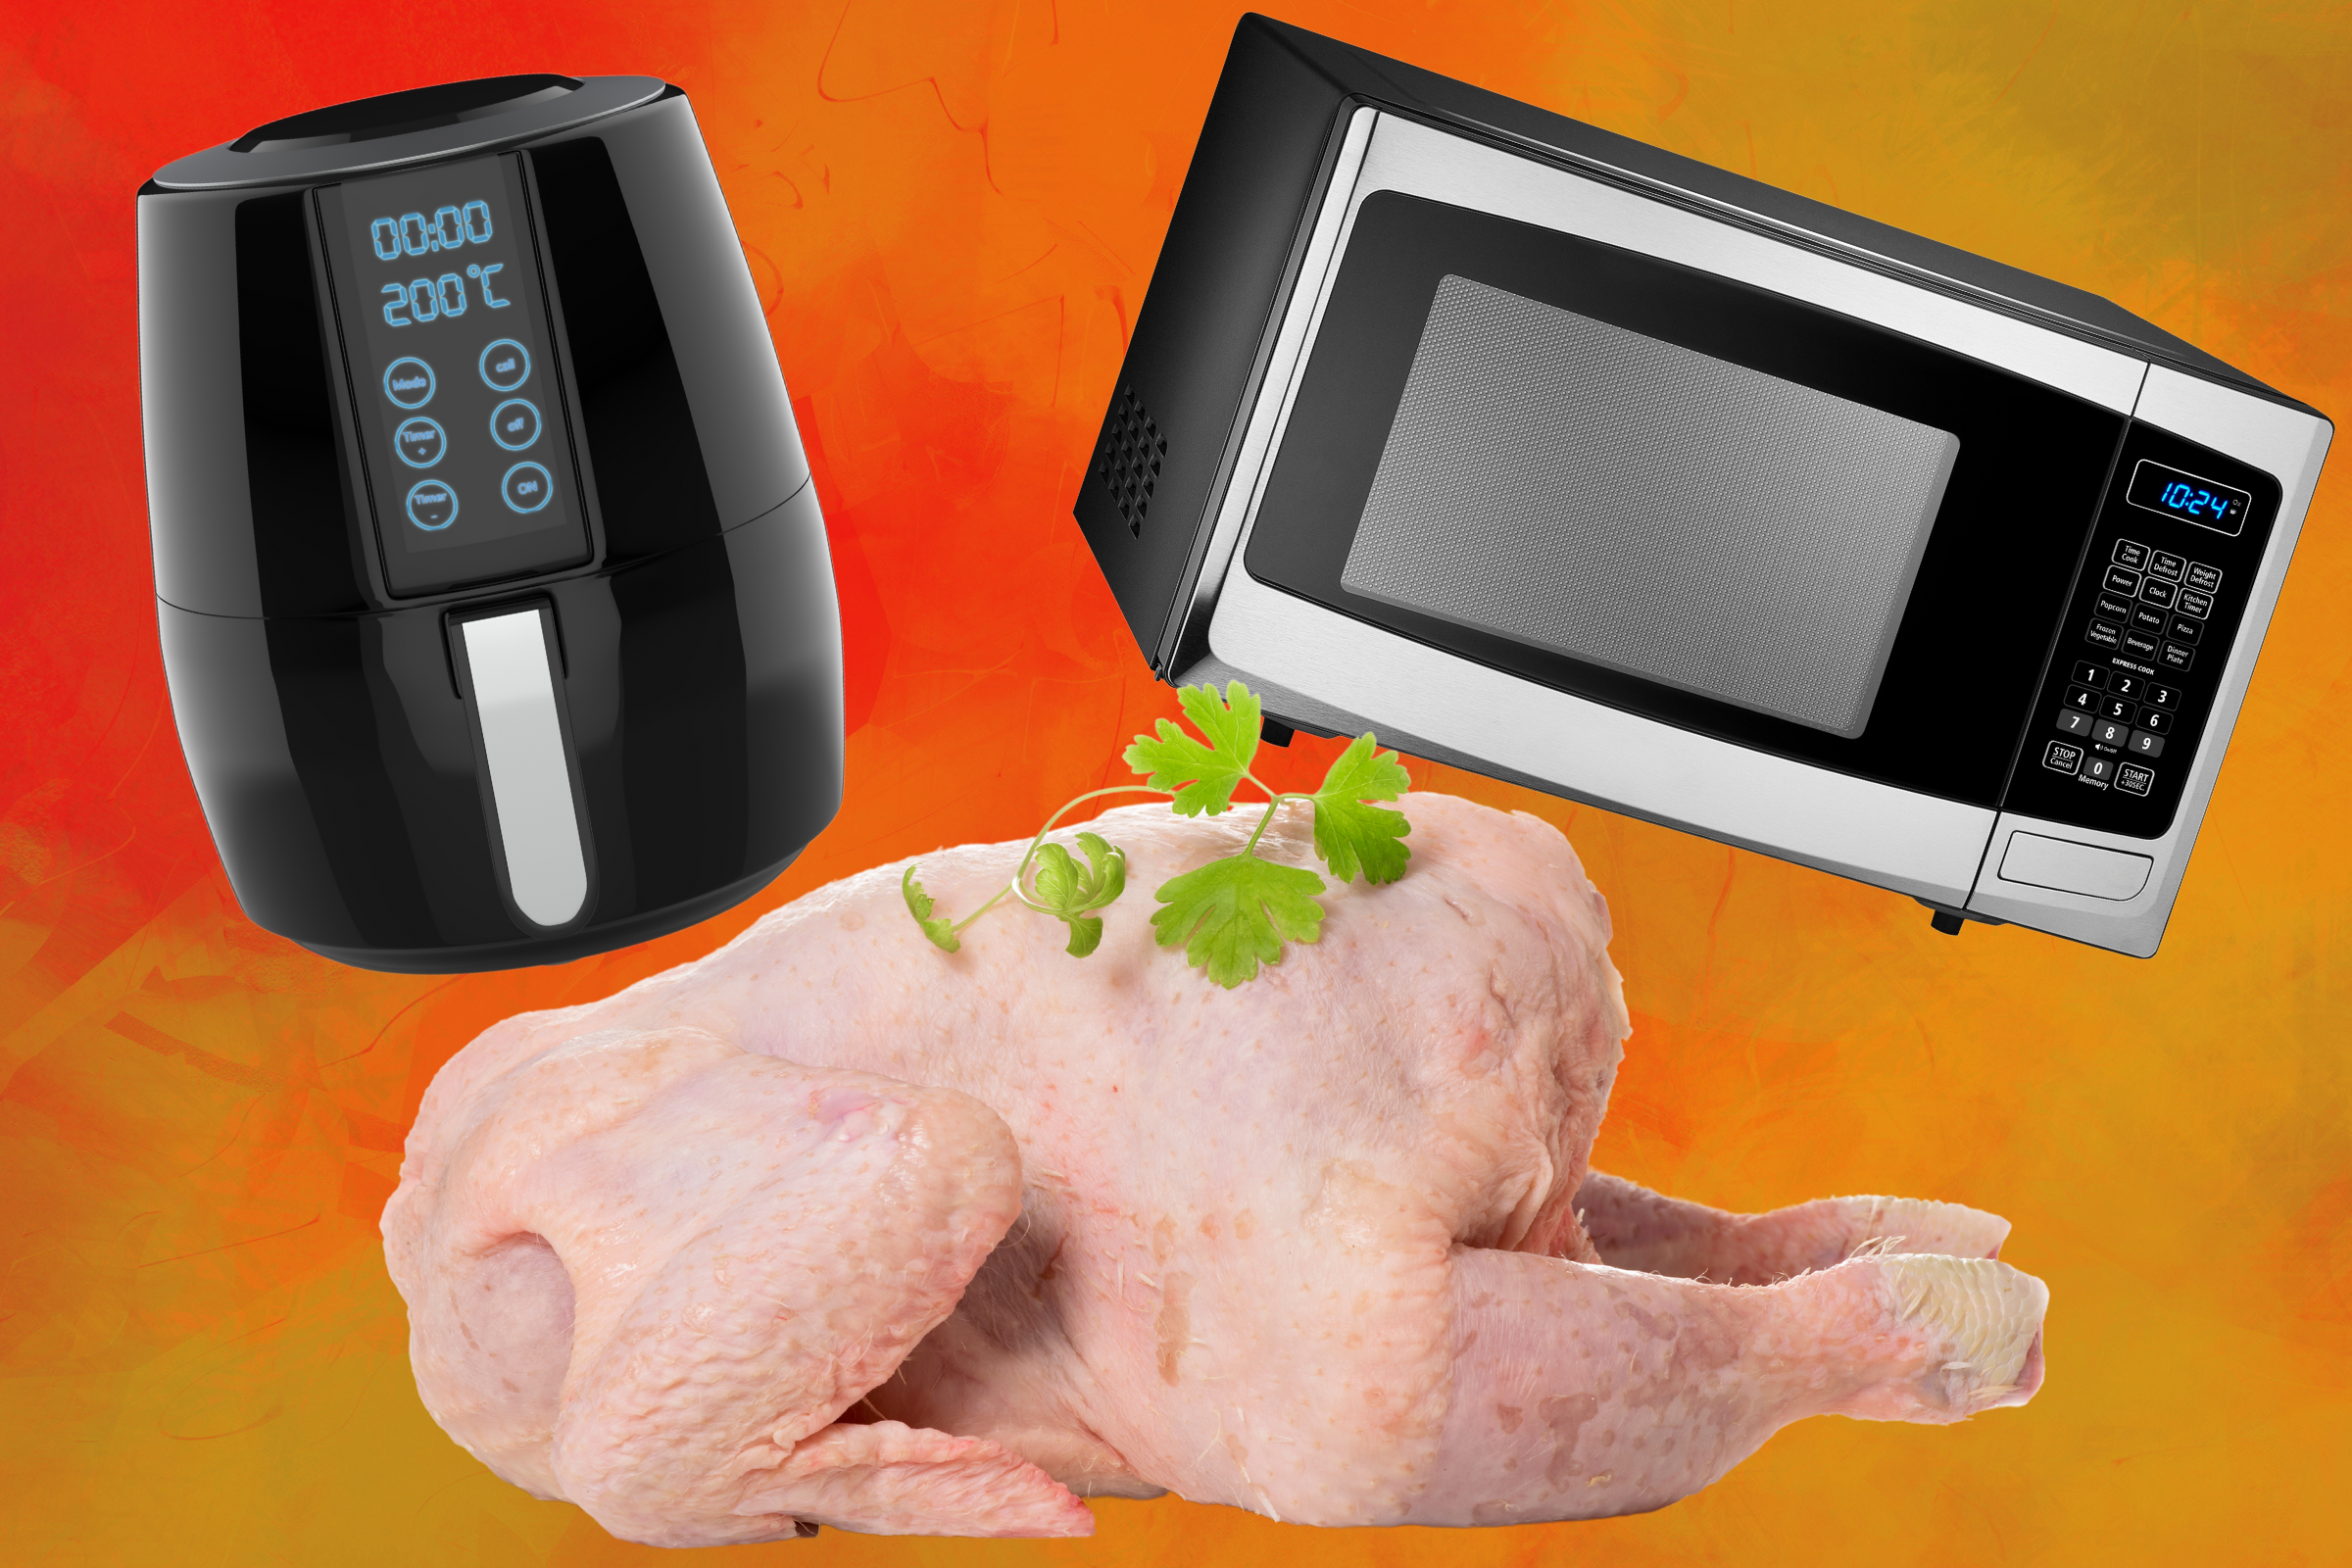 https://d.newsweek.com/en/full/2153735/turkey-cooking-air-fryer-microwave.png